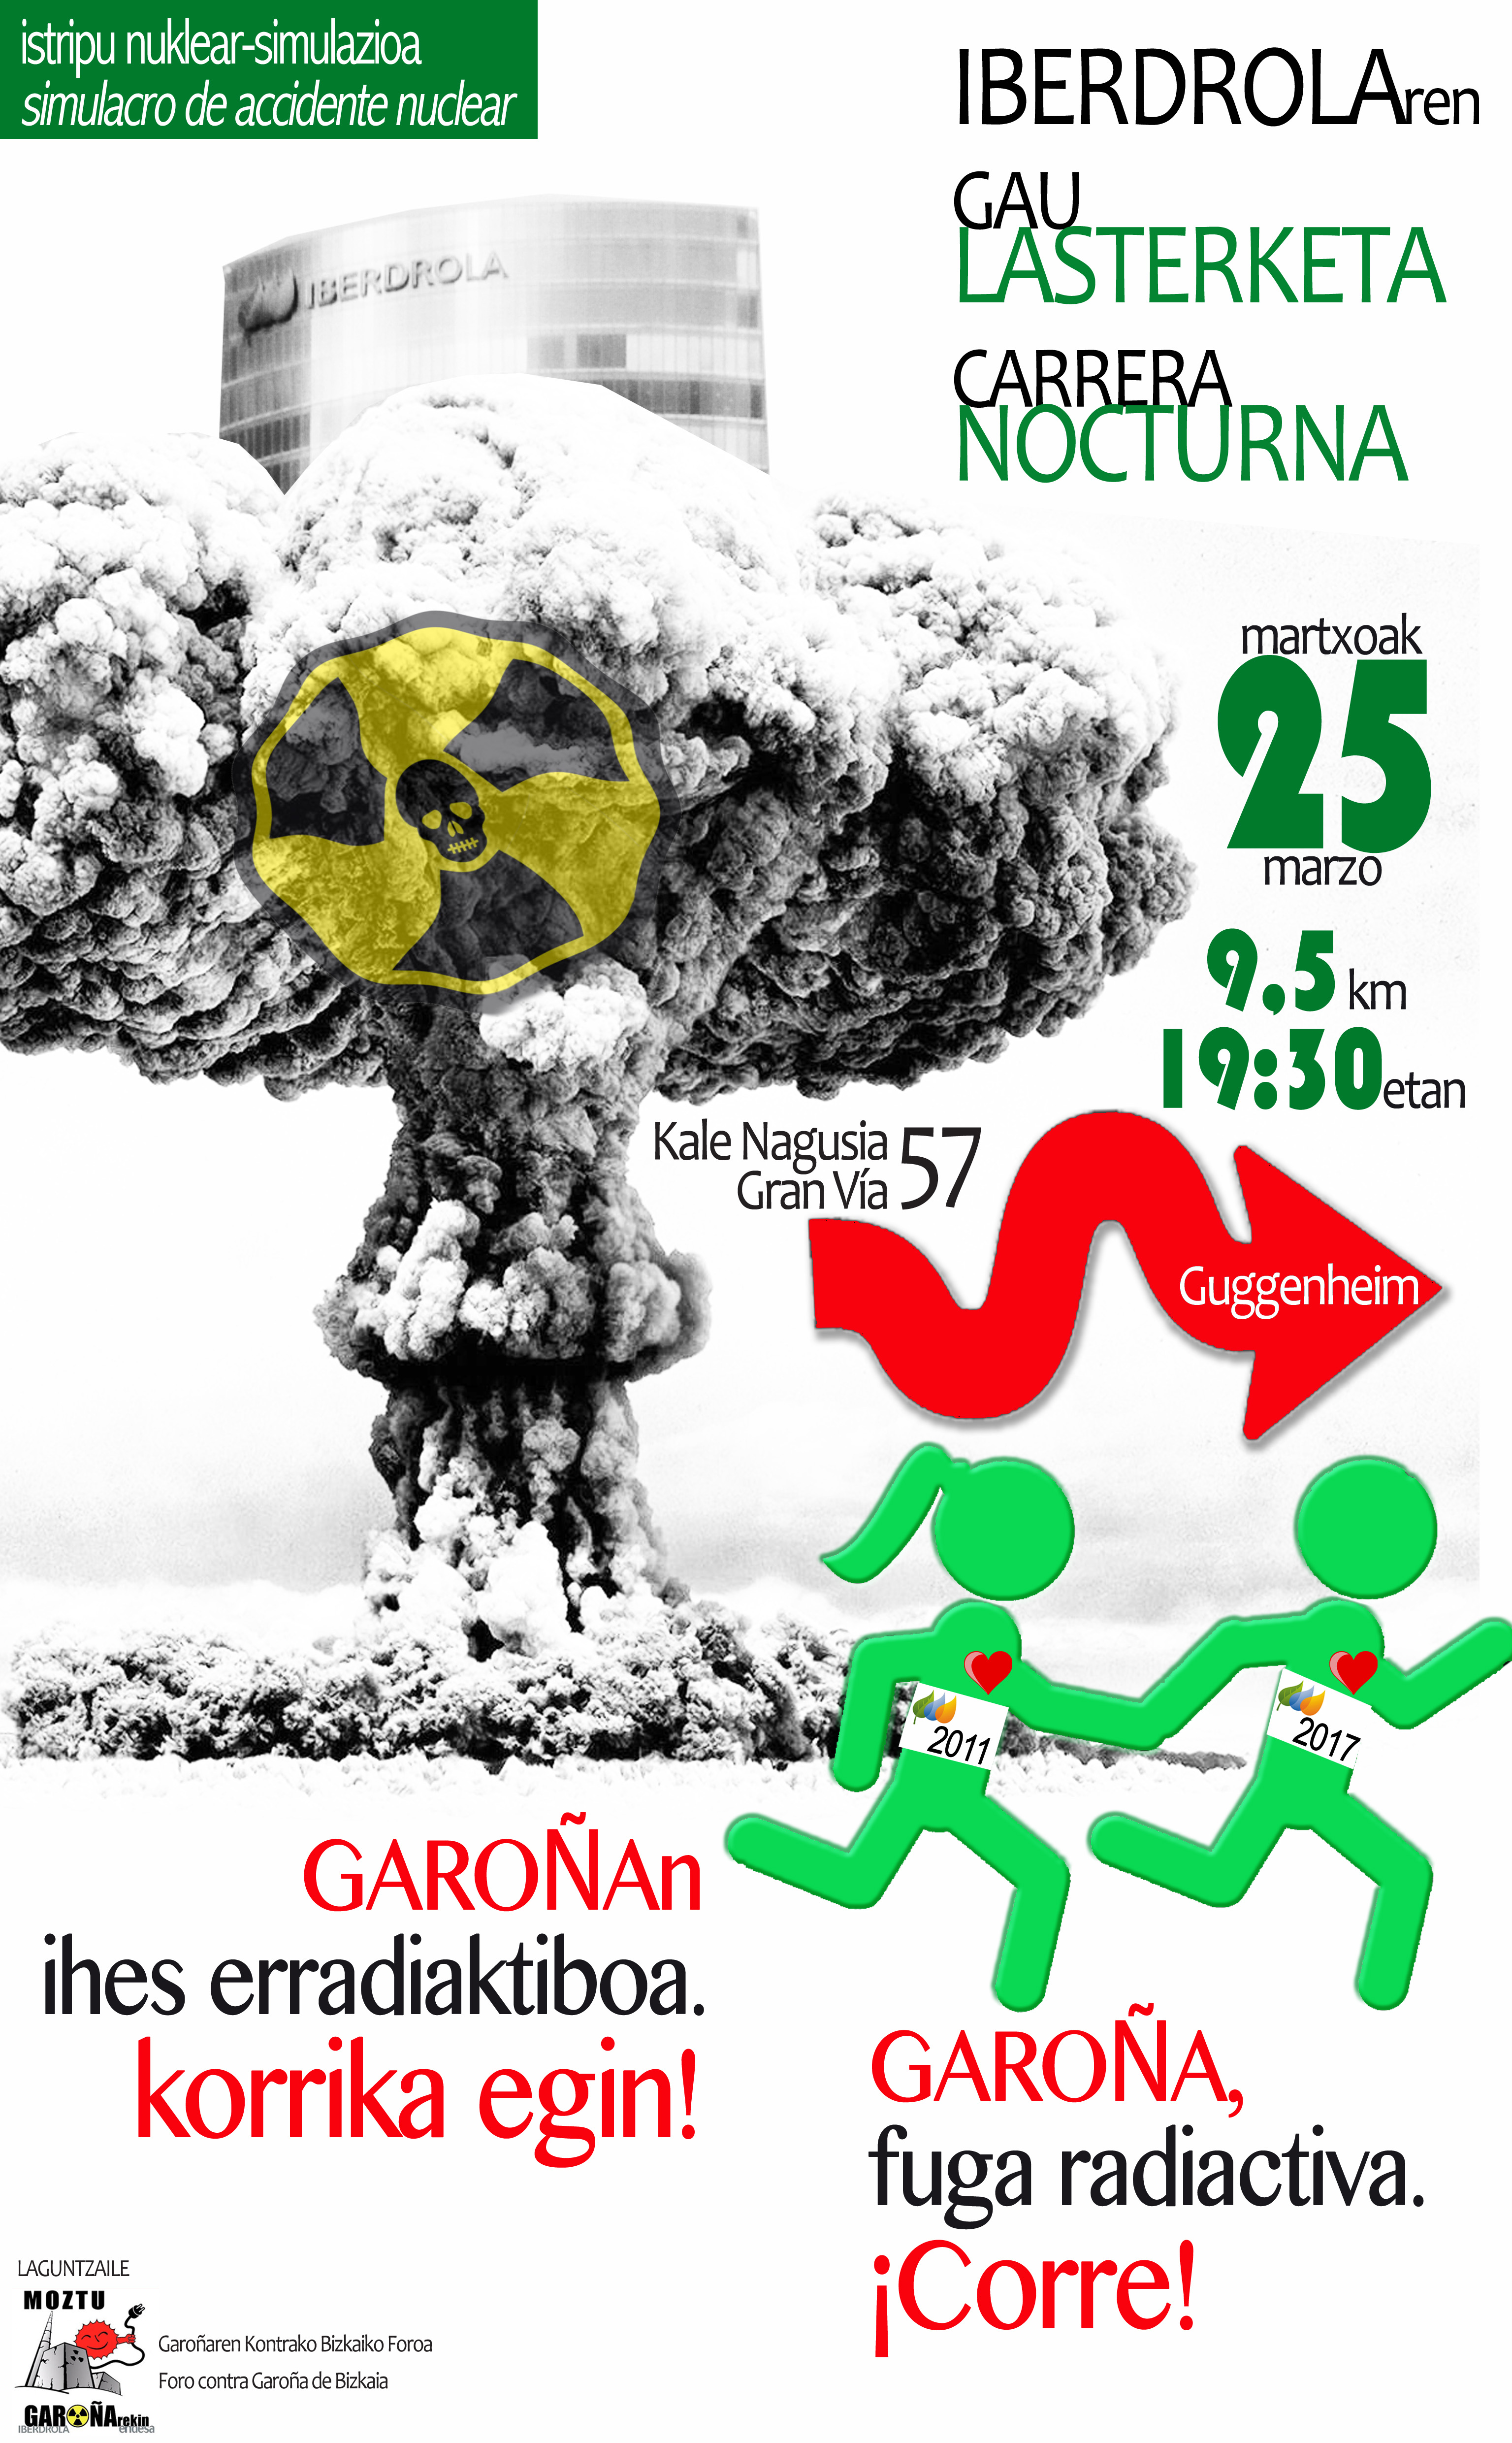 La carrera nocturna de Iberdrola 2017 como simulacro de accidente nuclear. ¡¡Corre: escape radiactivo en Garoña!!